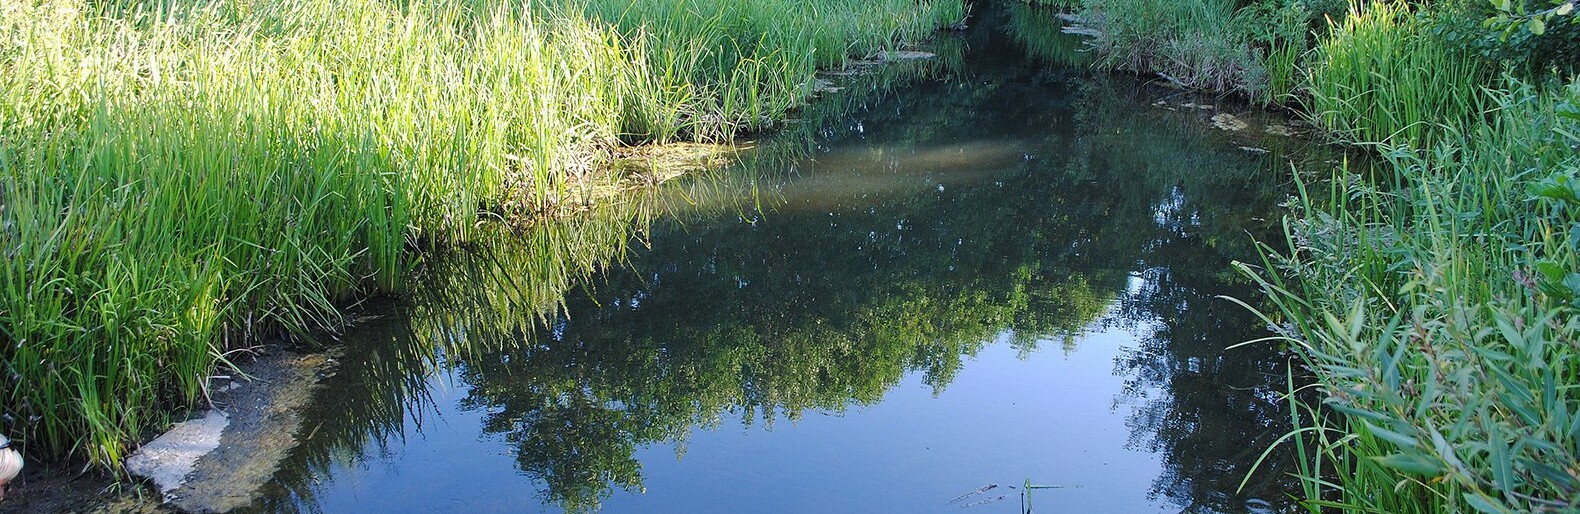 Во время очистки реки Ворсклы сломался земснаряд и загрязнил воду масляным пятном